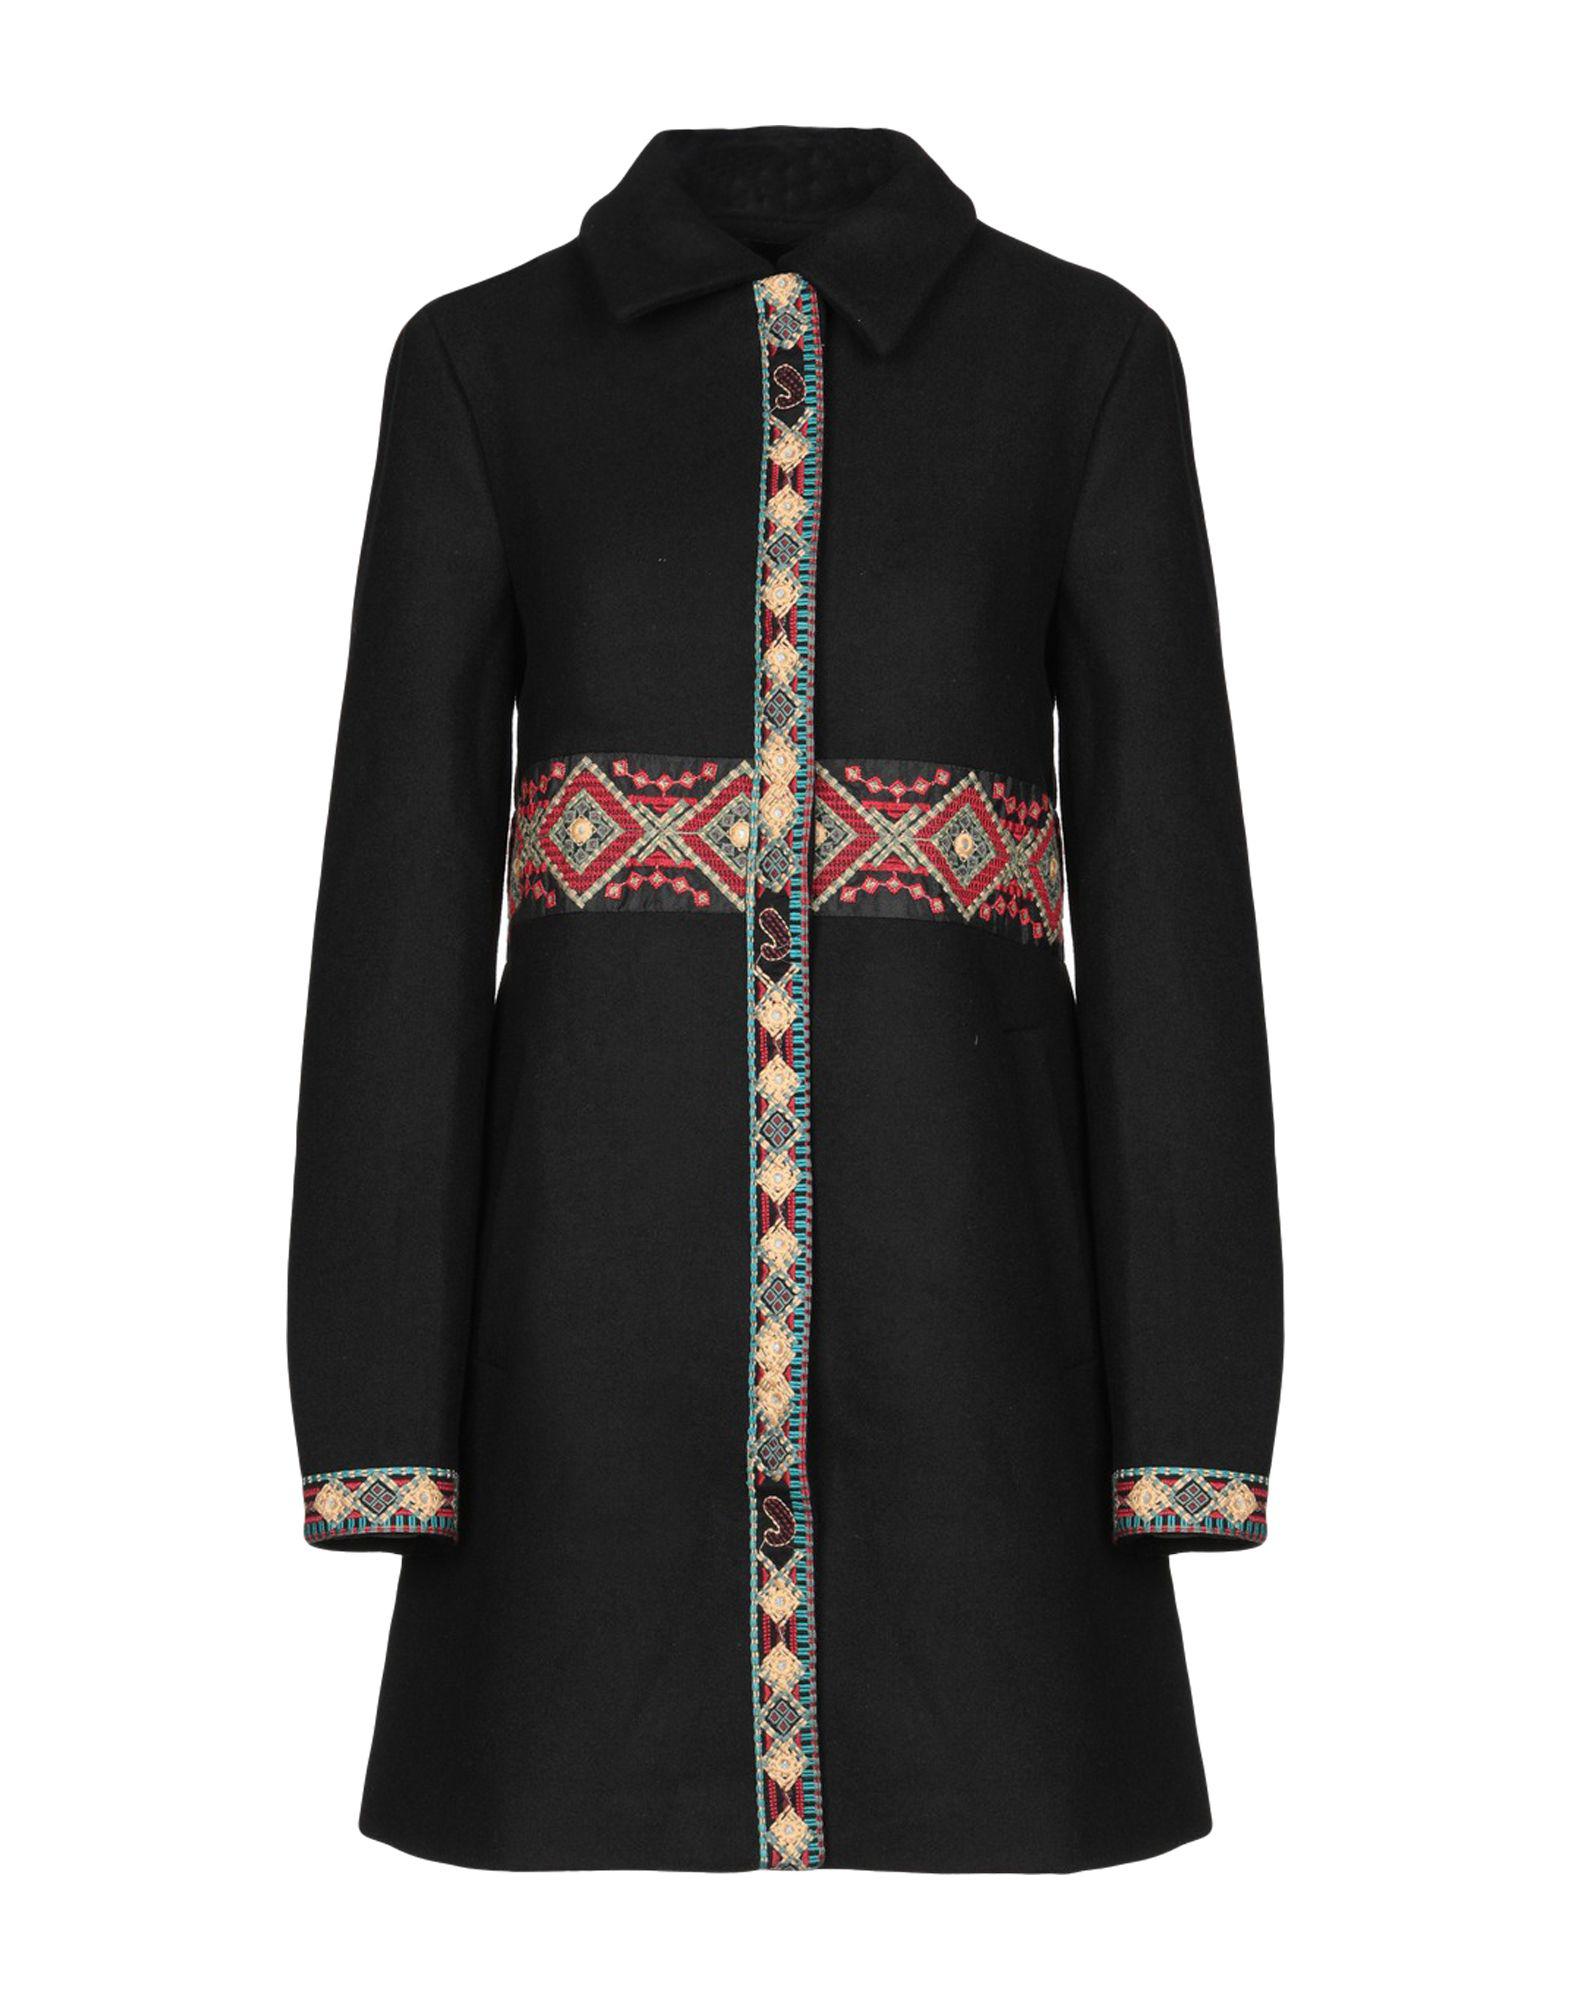 Desigual Synthetic Elisabeth Coat in Black - Lyst